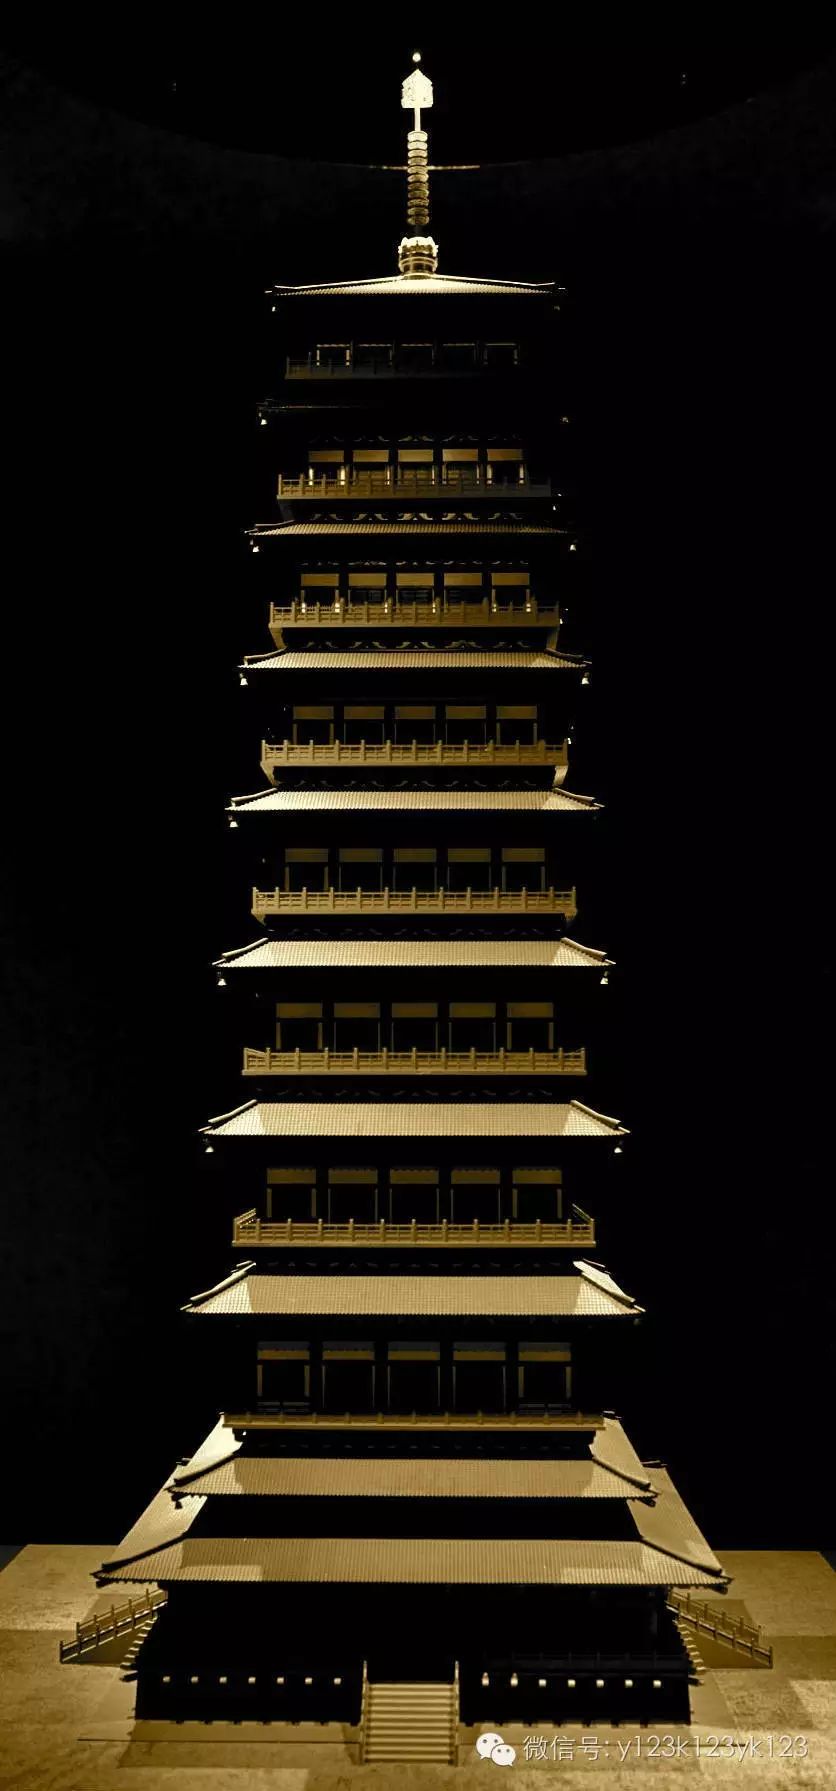 此塔是在北魏洛阳永宁寺塔之后,在北齐国都邺城建造的大